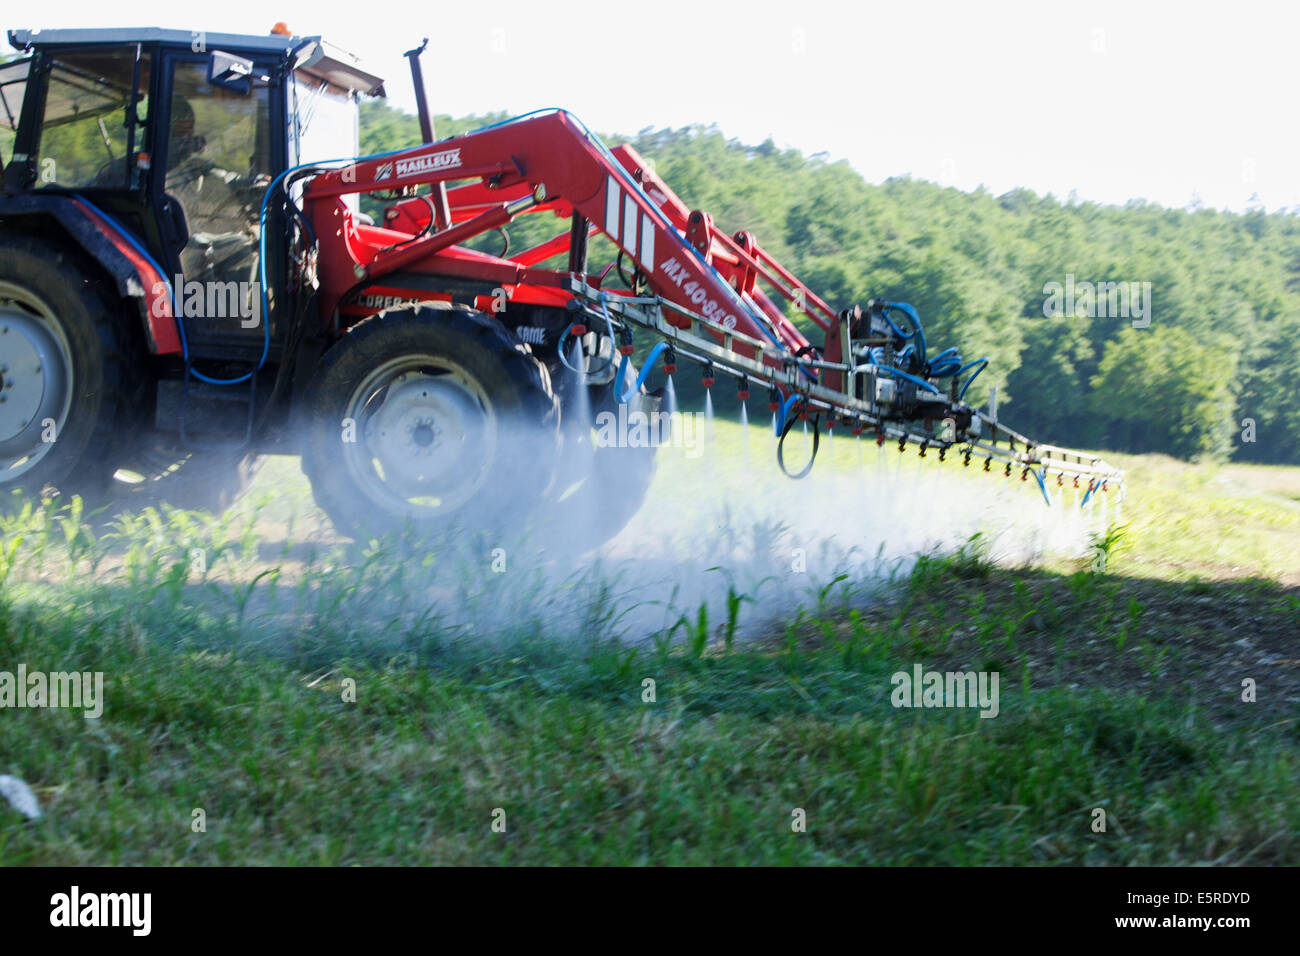 Agricultor pulverizar productos químicos en los campos de maíz, este agricultor utiliza prácticas agrícolas sostenibles en el uso razonable cantidad de entradas Foto de stock